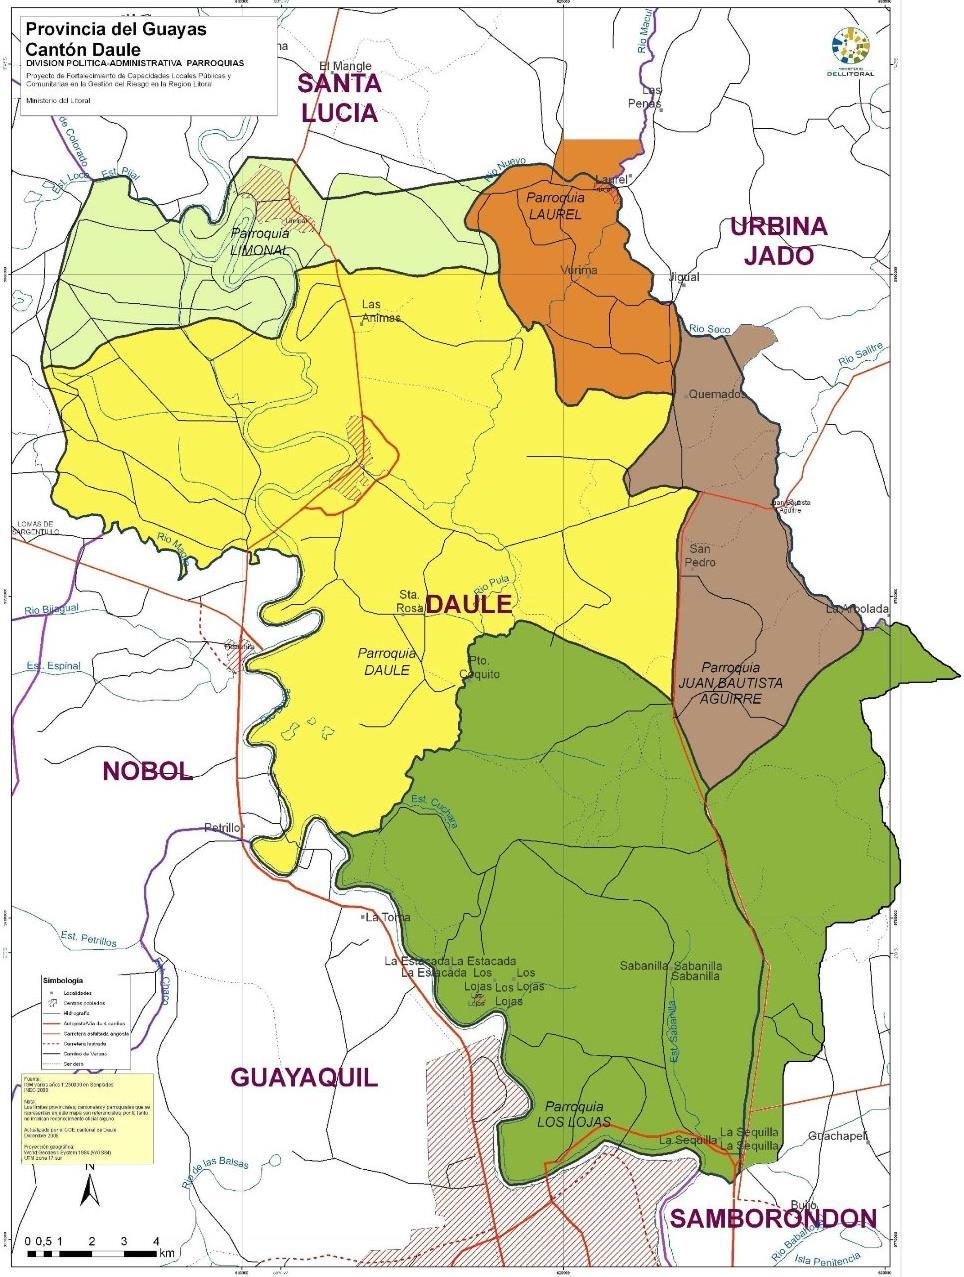 Figura 1.- Mapa de división política administrativa de parroquias del Cantón Daule Fuente: http://www.daule.gob.ec/en-us/nuestrocanton/generalidades.